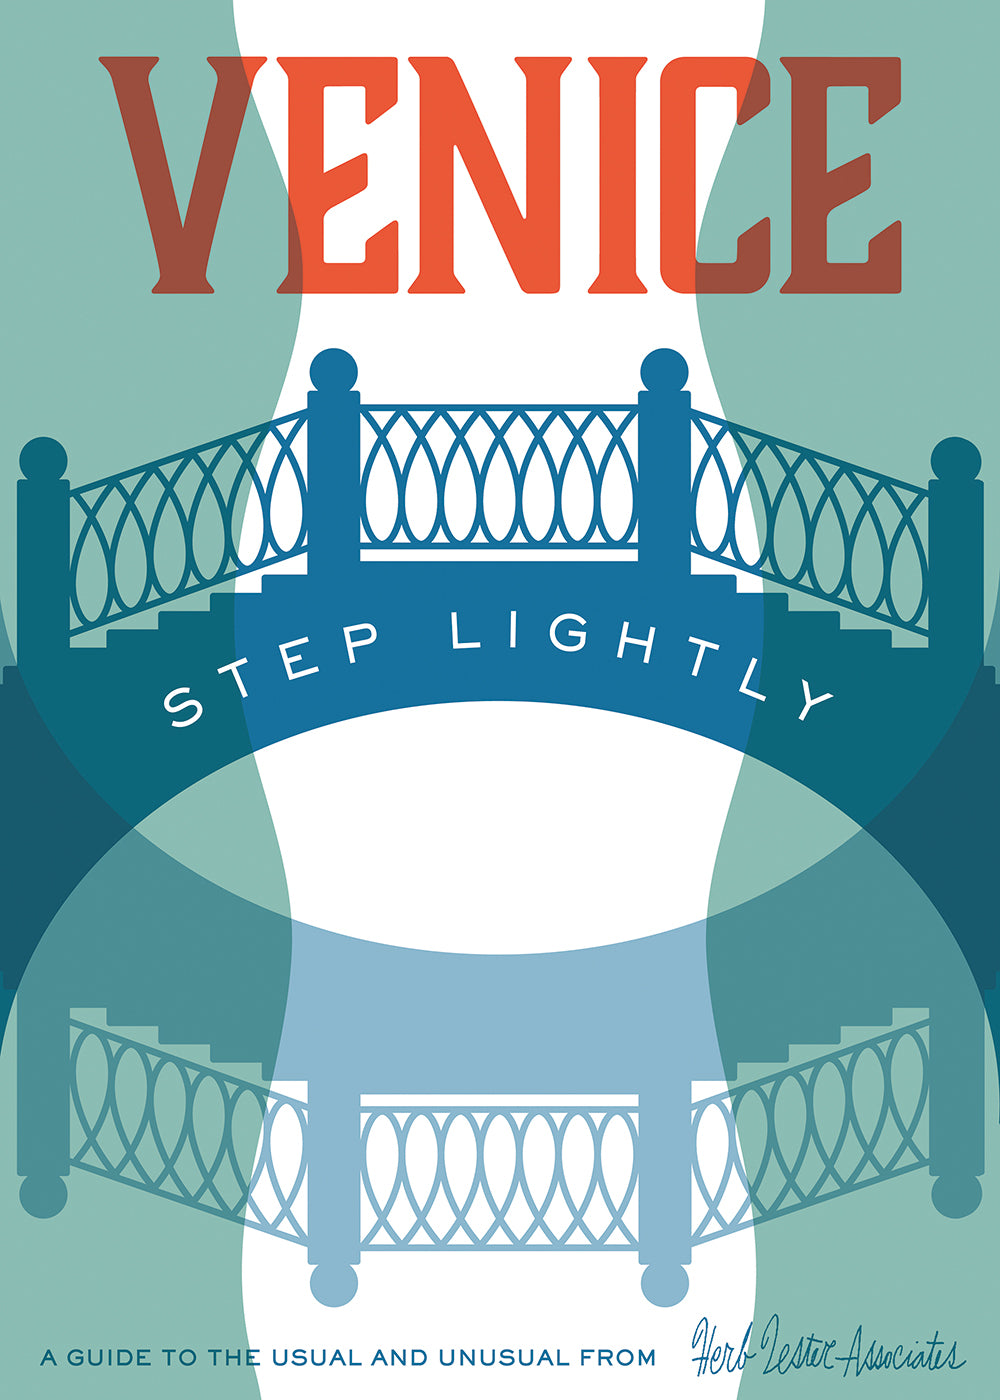 Venice: Step Lightly